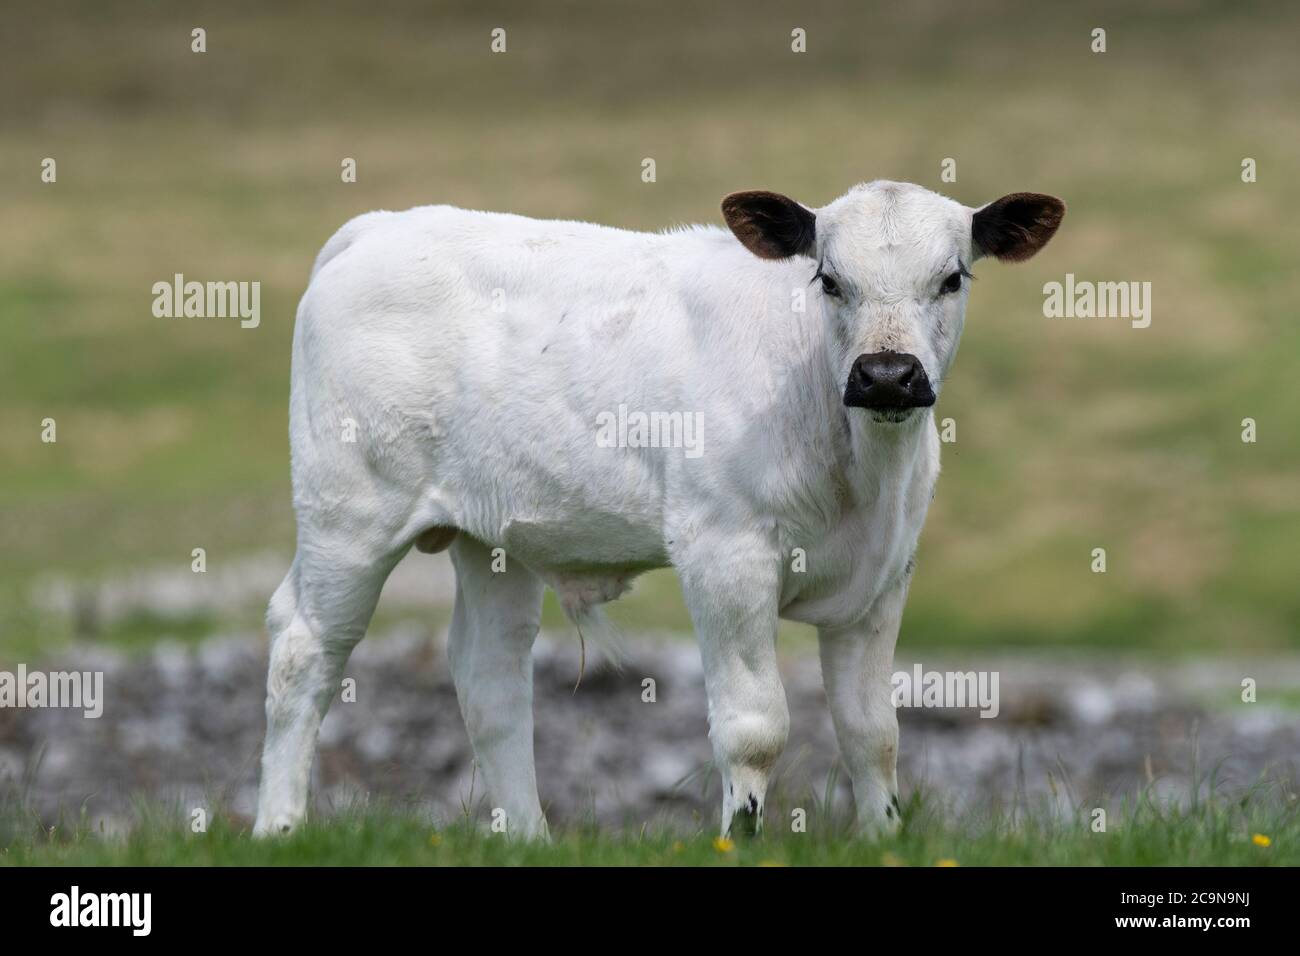 British White cattle grazing in upland pasture Stock Photo